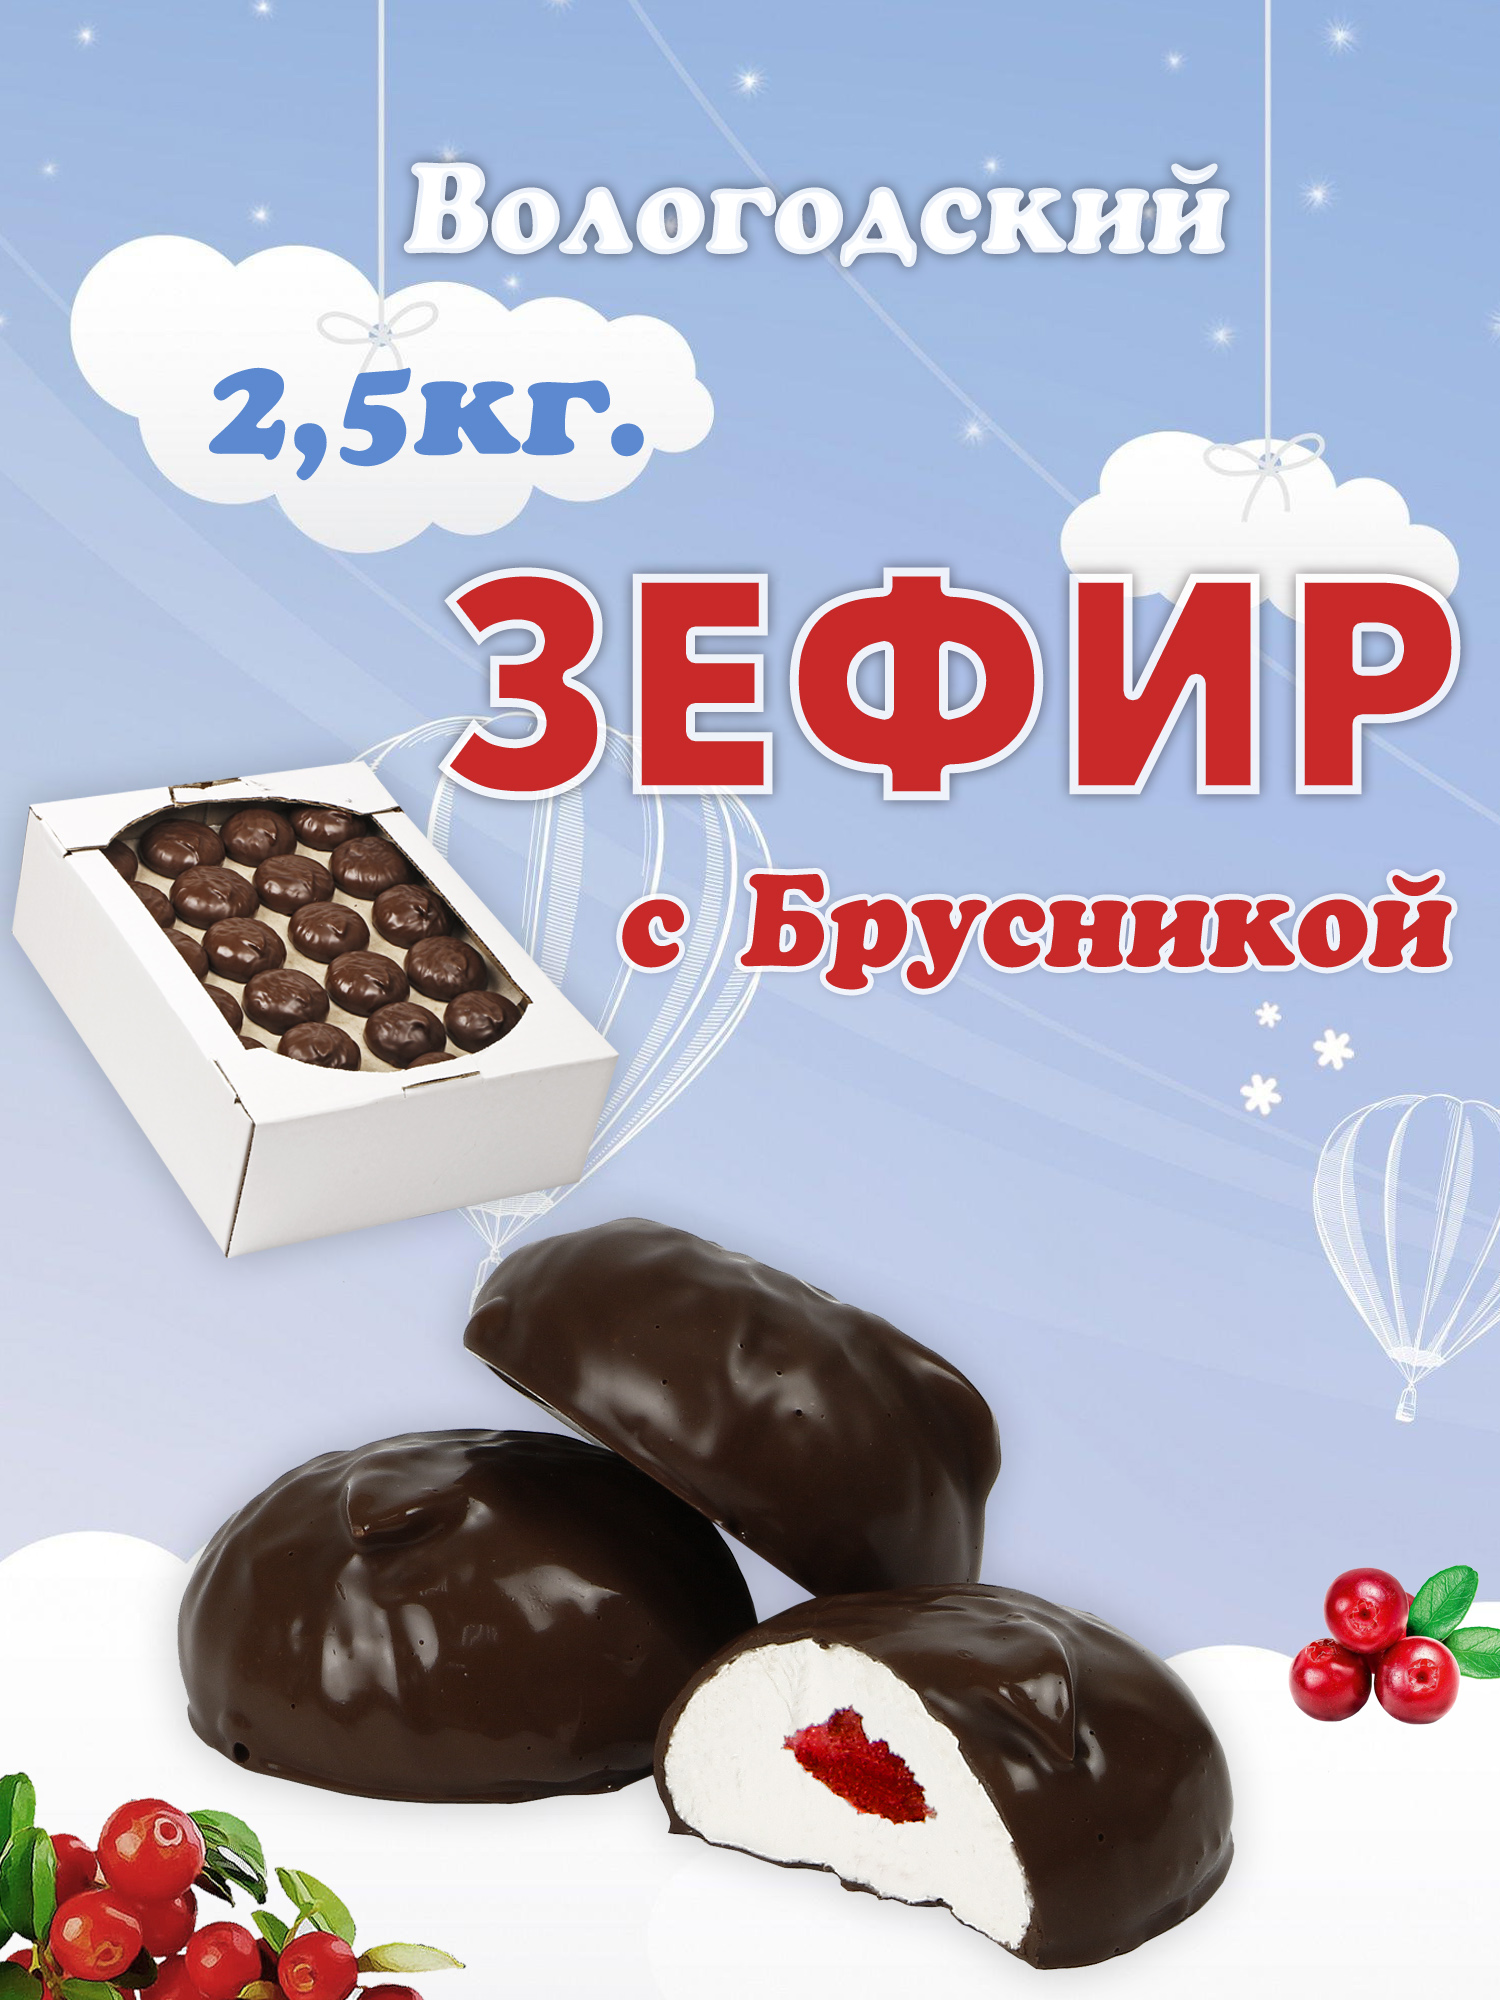 Зефир Вологодский в шоколаде с Брусникой 2,5кг.  .jpg